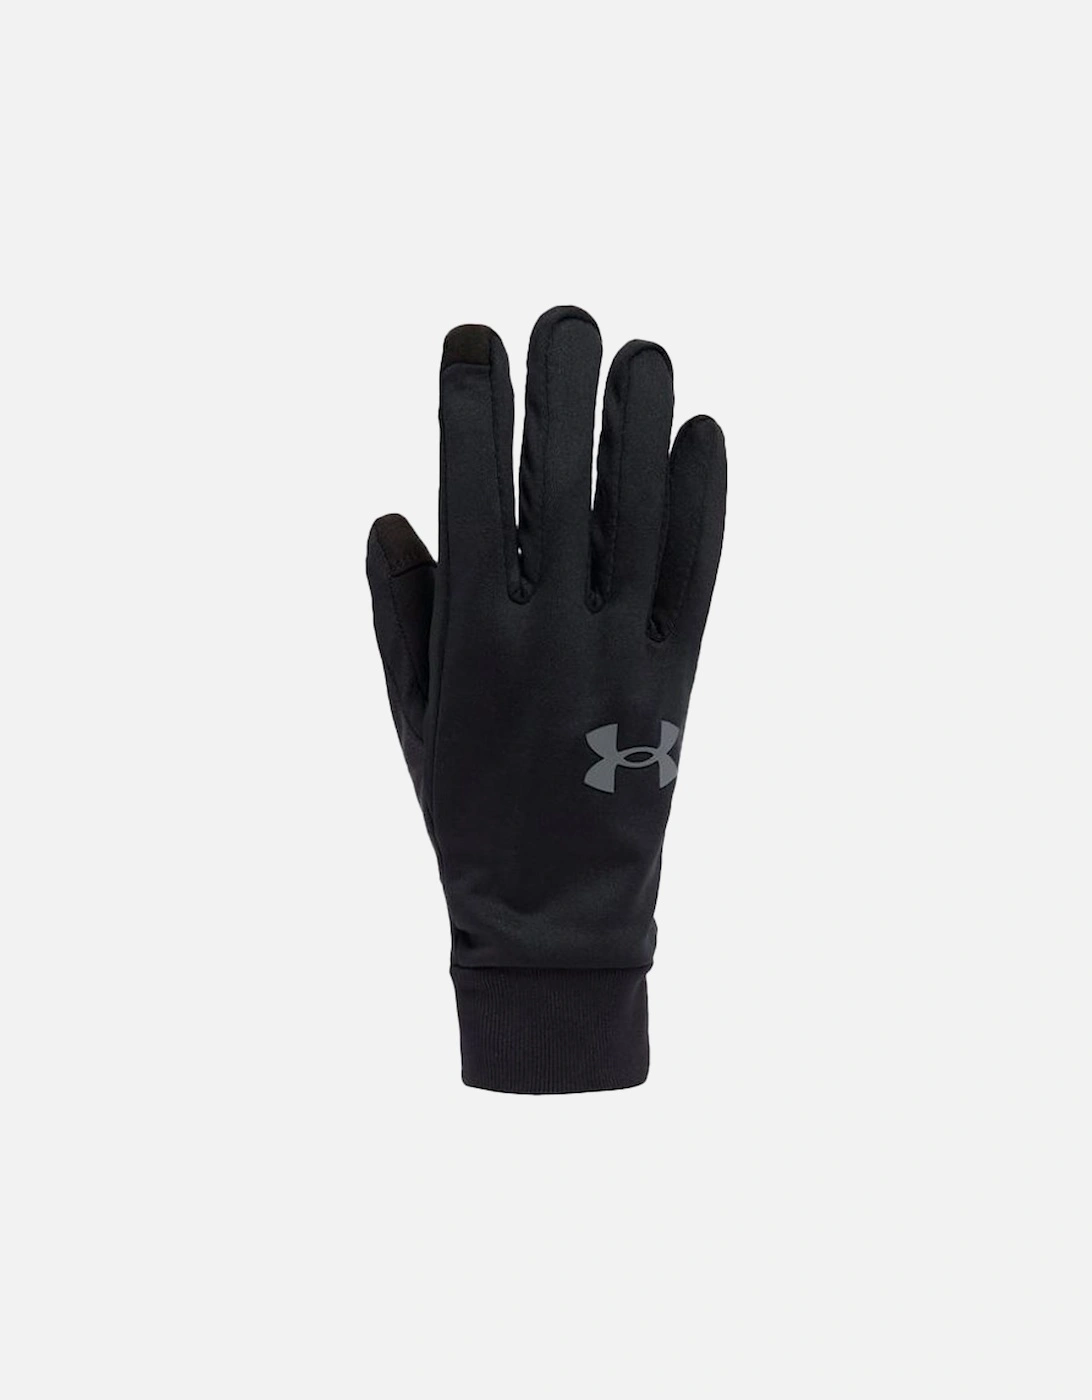 Mens Storm Liner Gloves (Black), 5 of 4